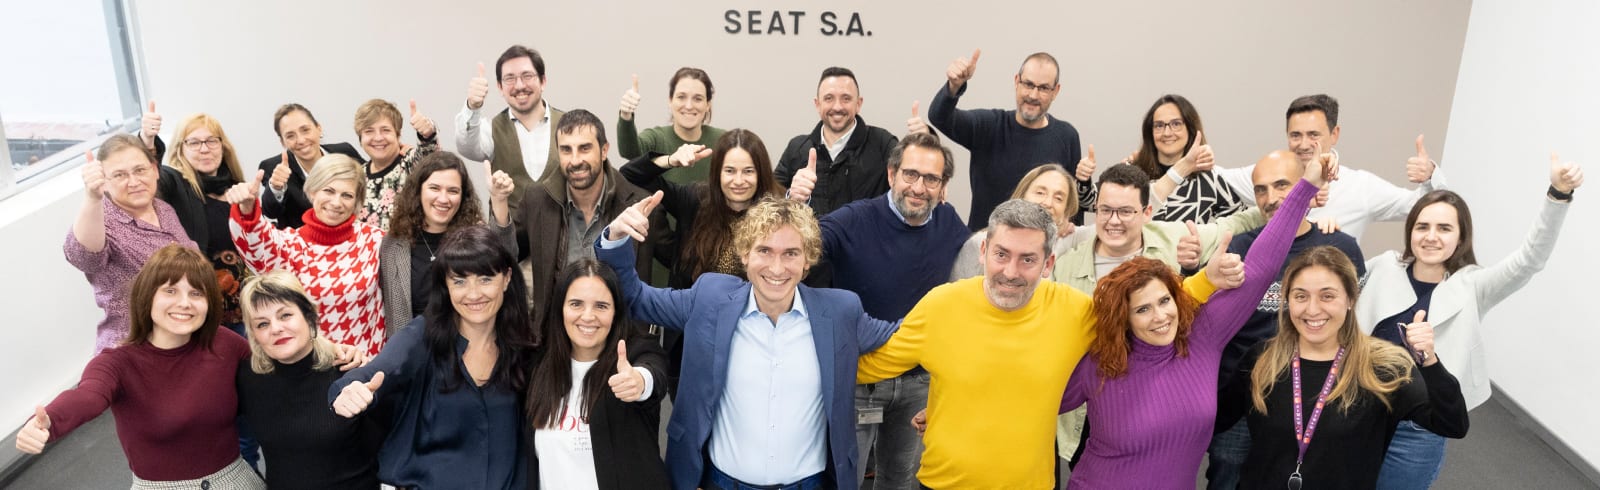 Firma SEAT S.A. podpisała nowy plan na rzecz równości i integracji